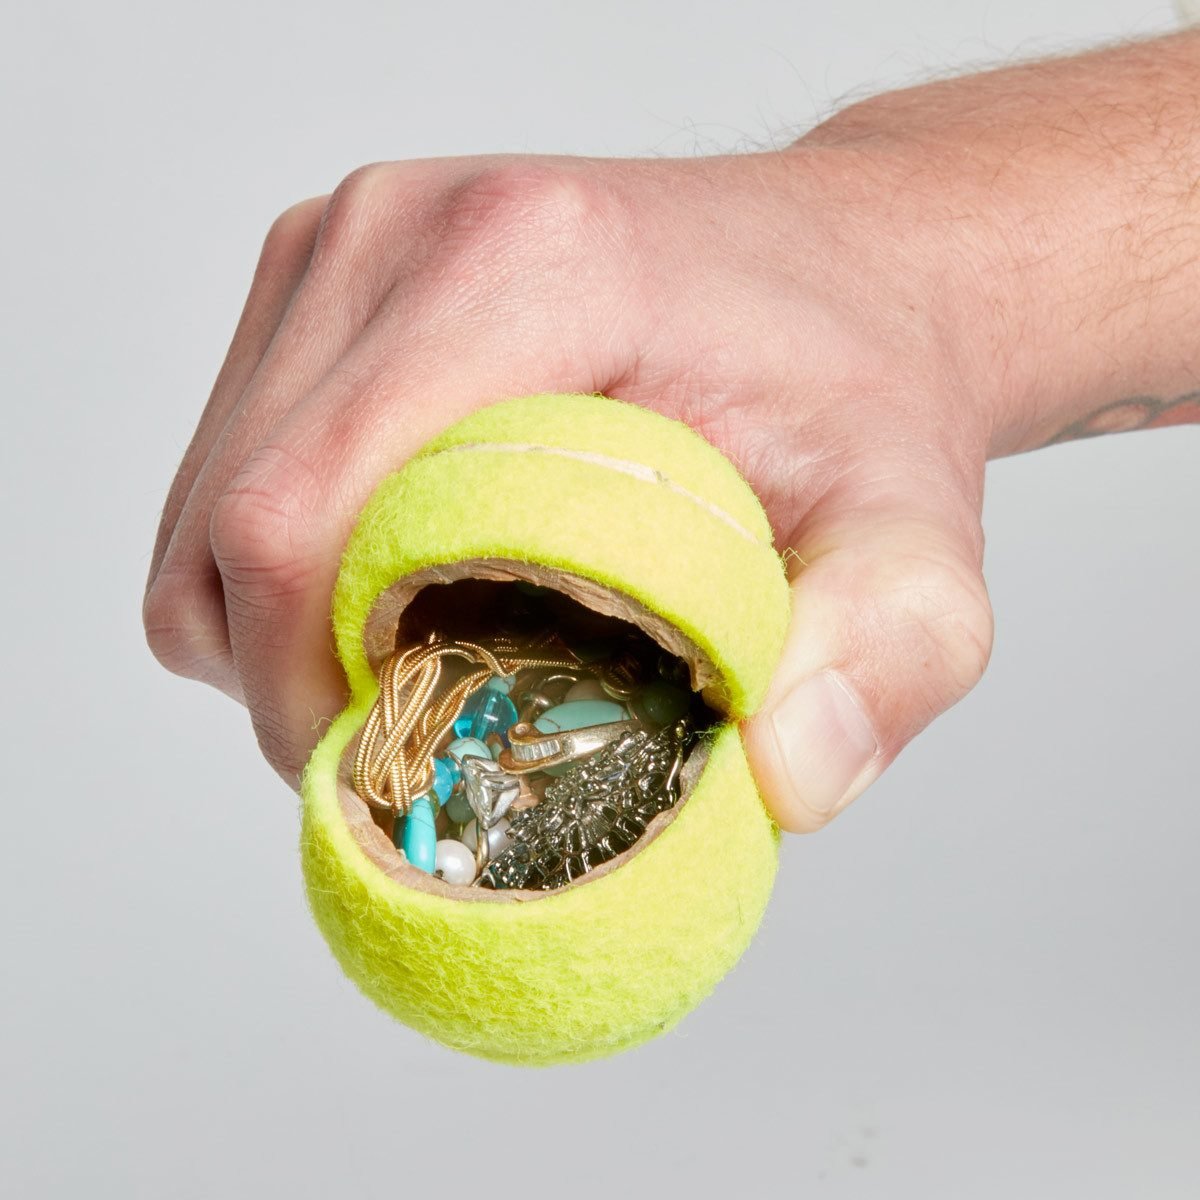 Slit Open a Tennis Ball